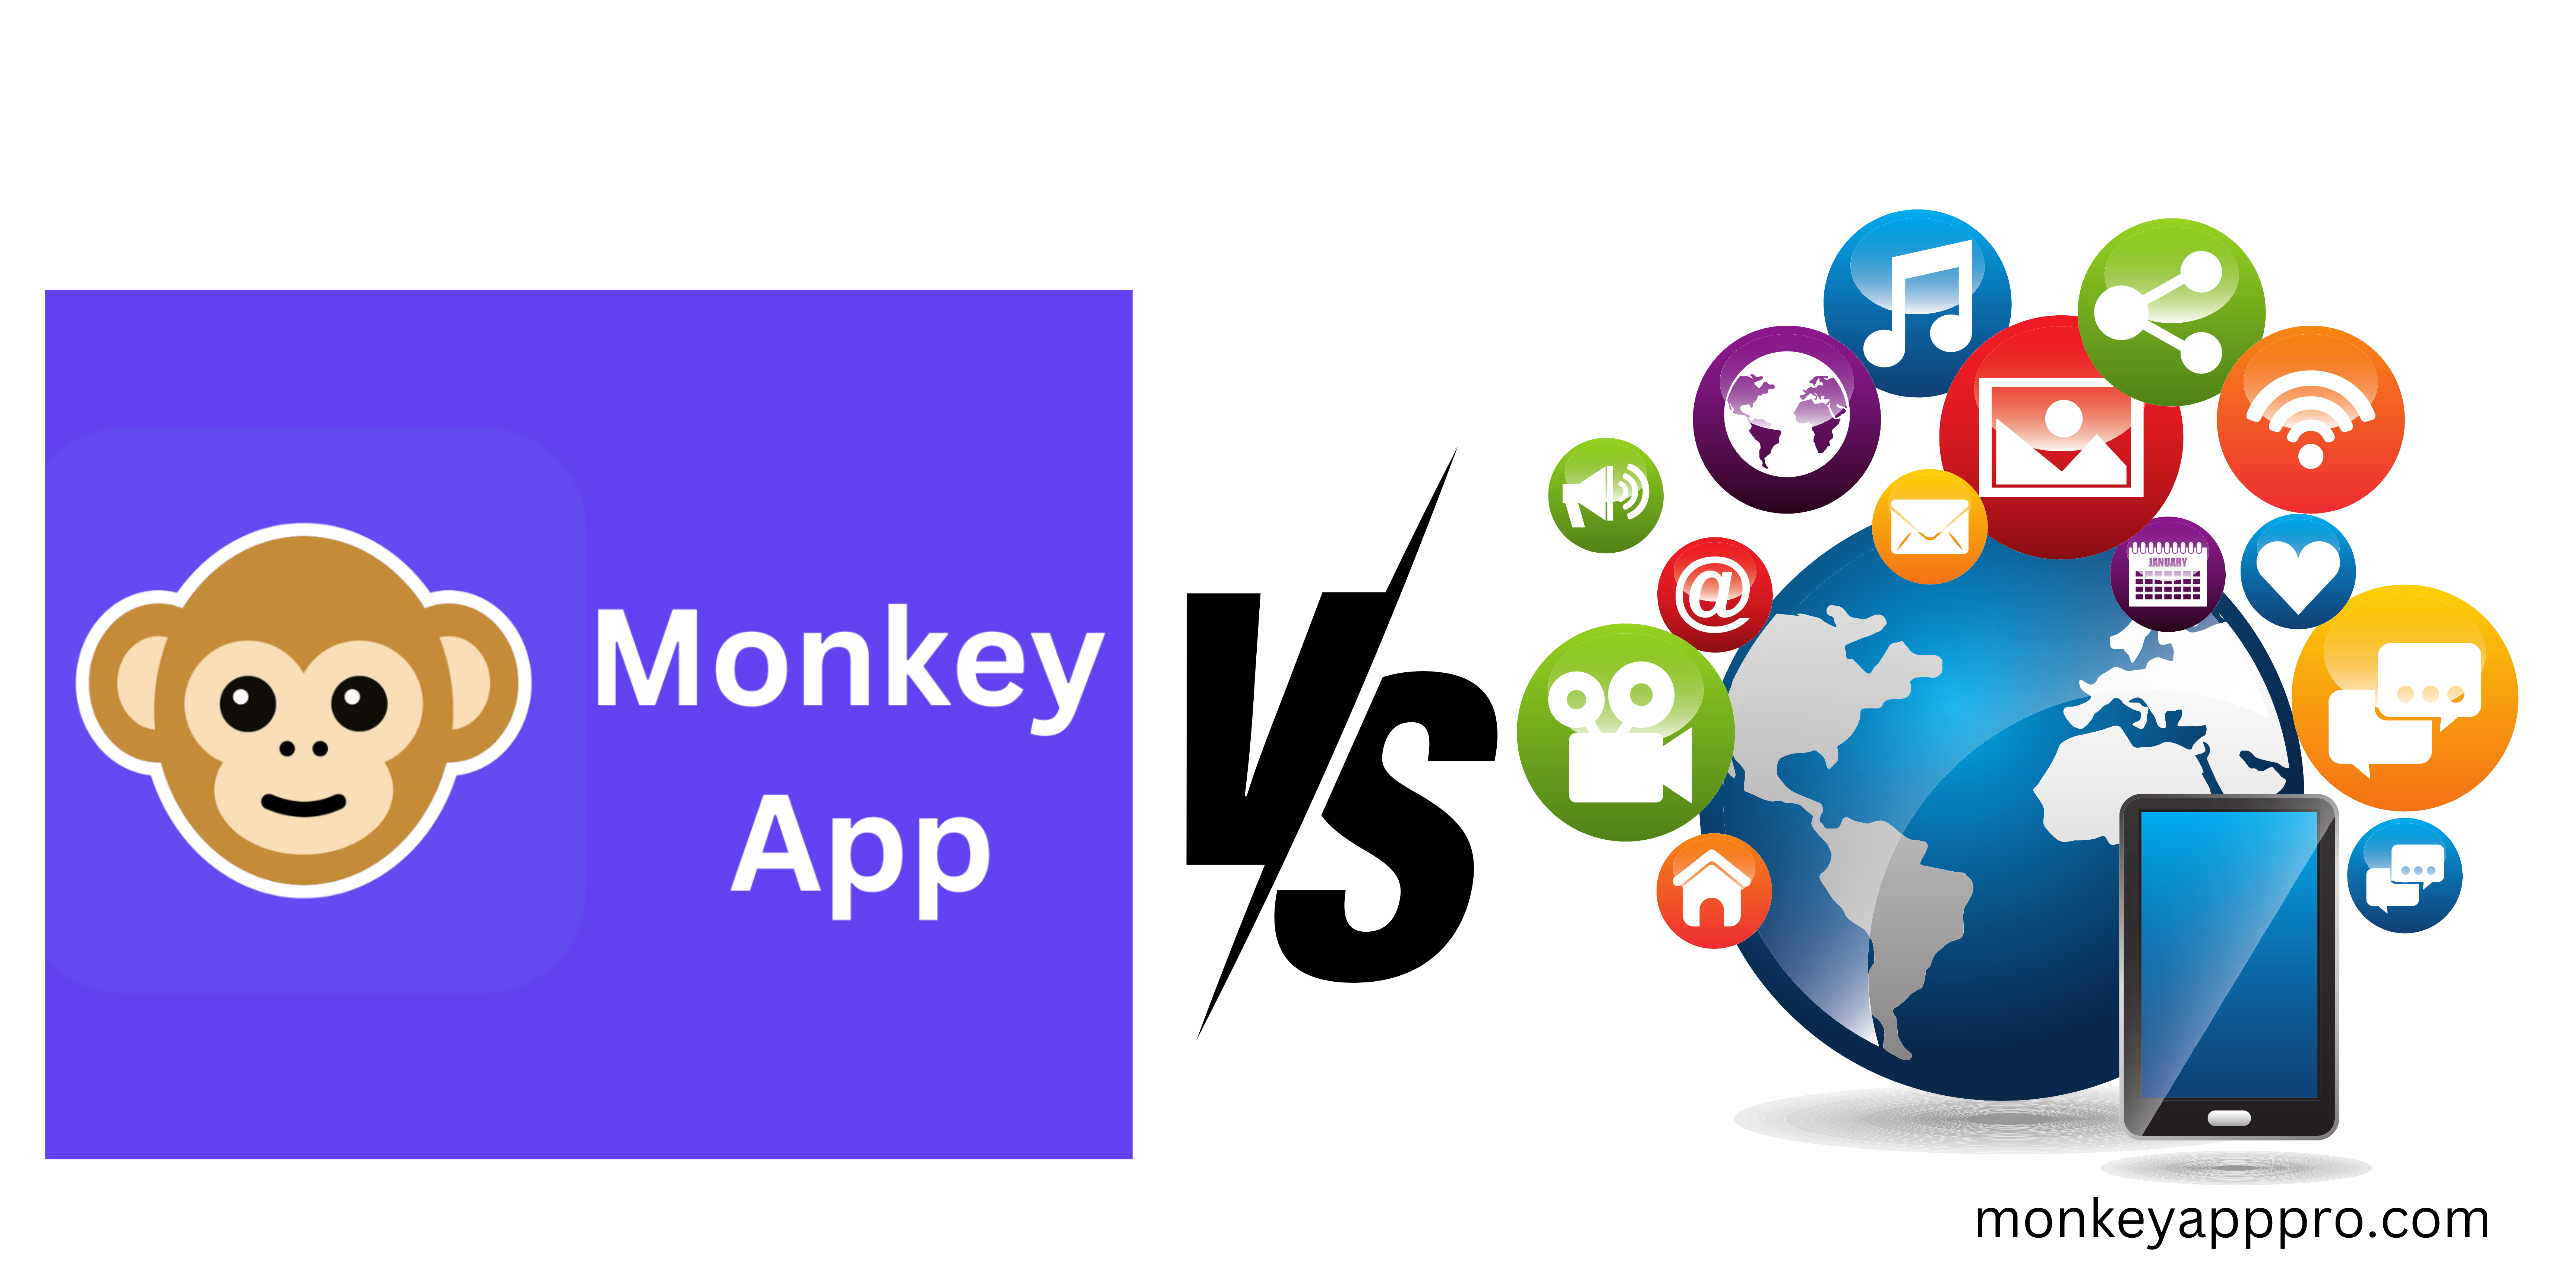 Apps Like Monkey